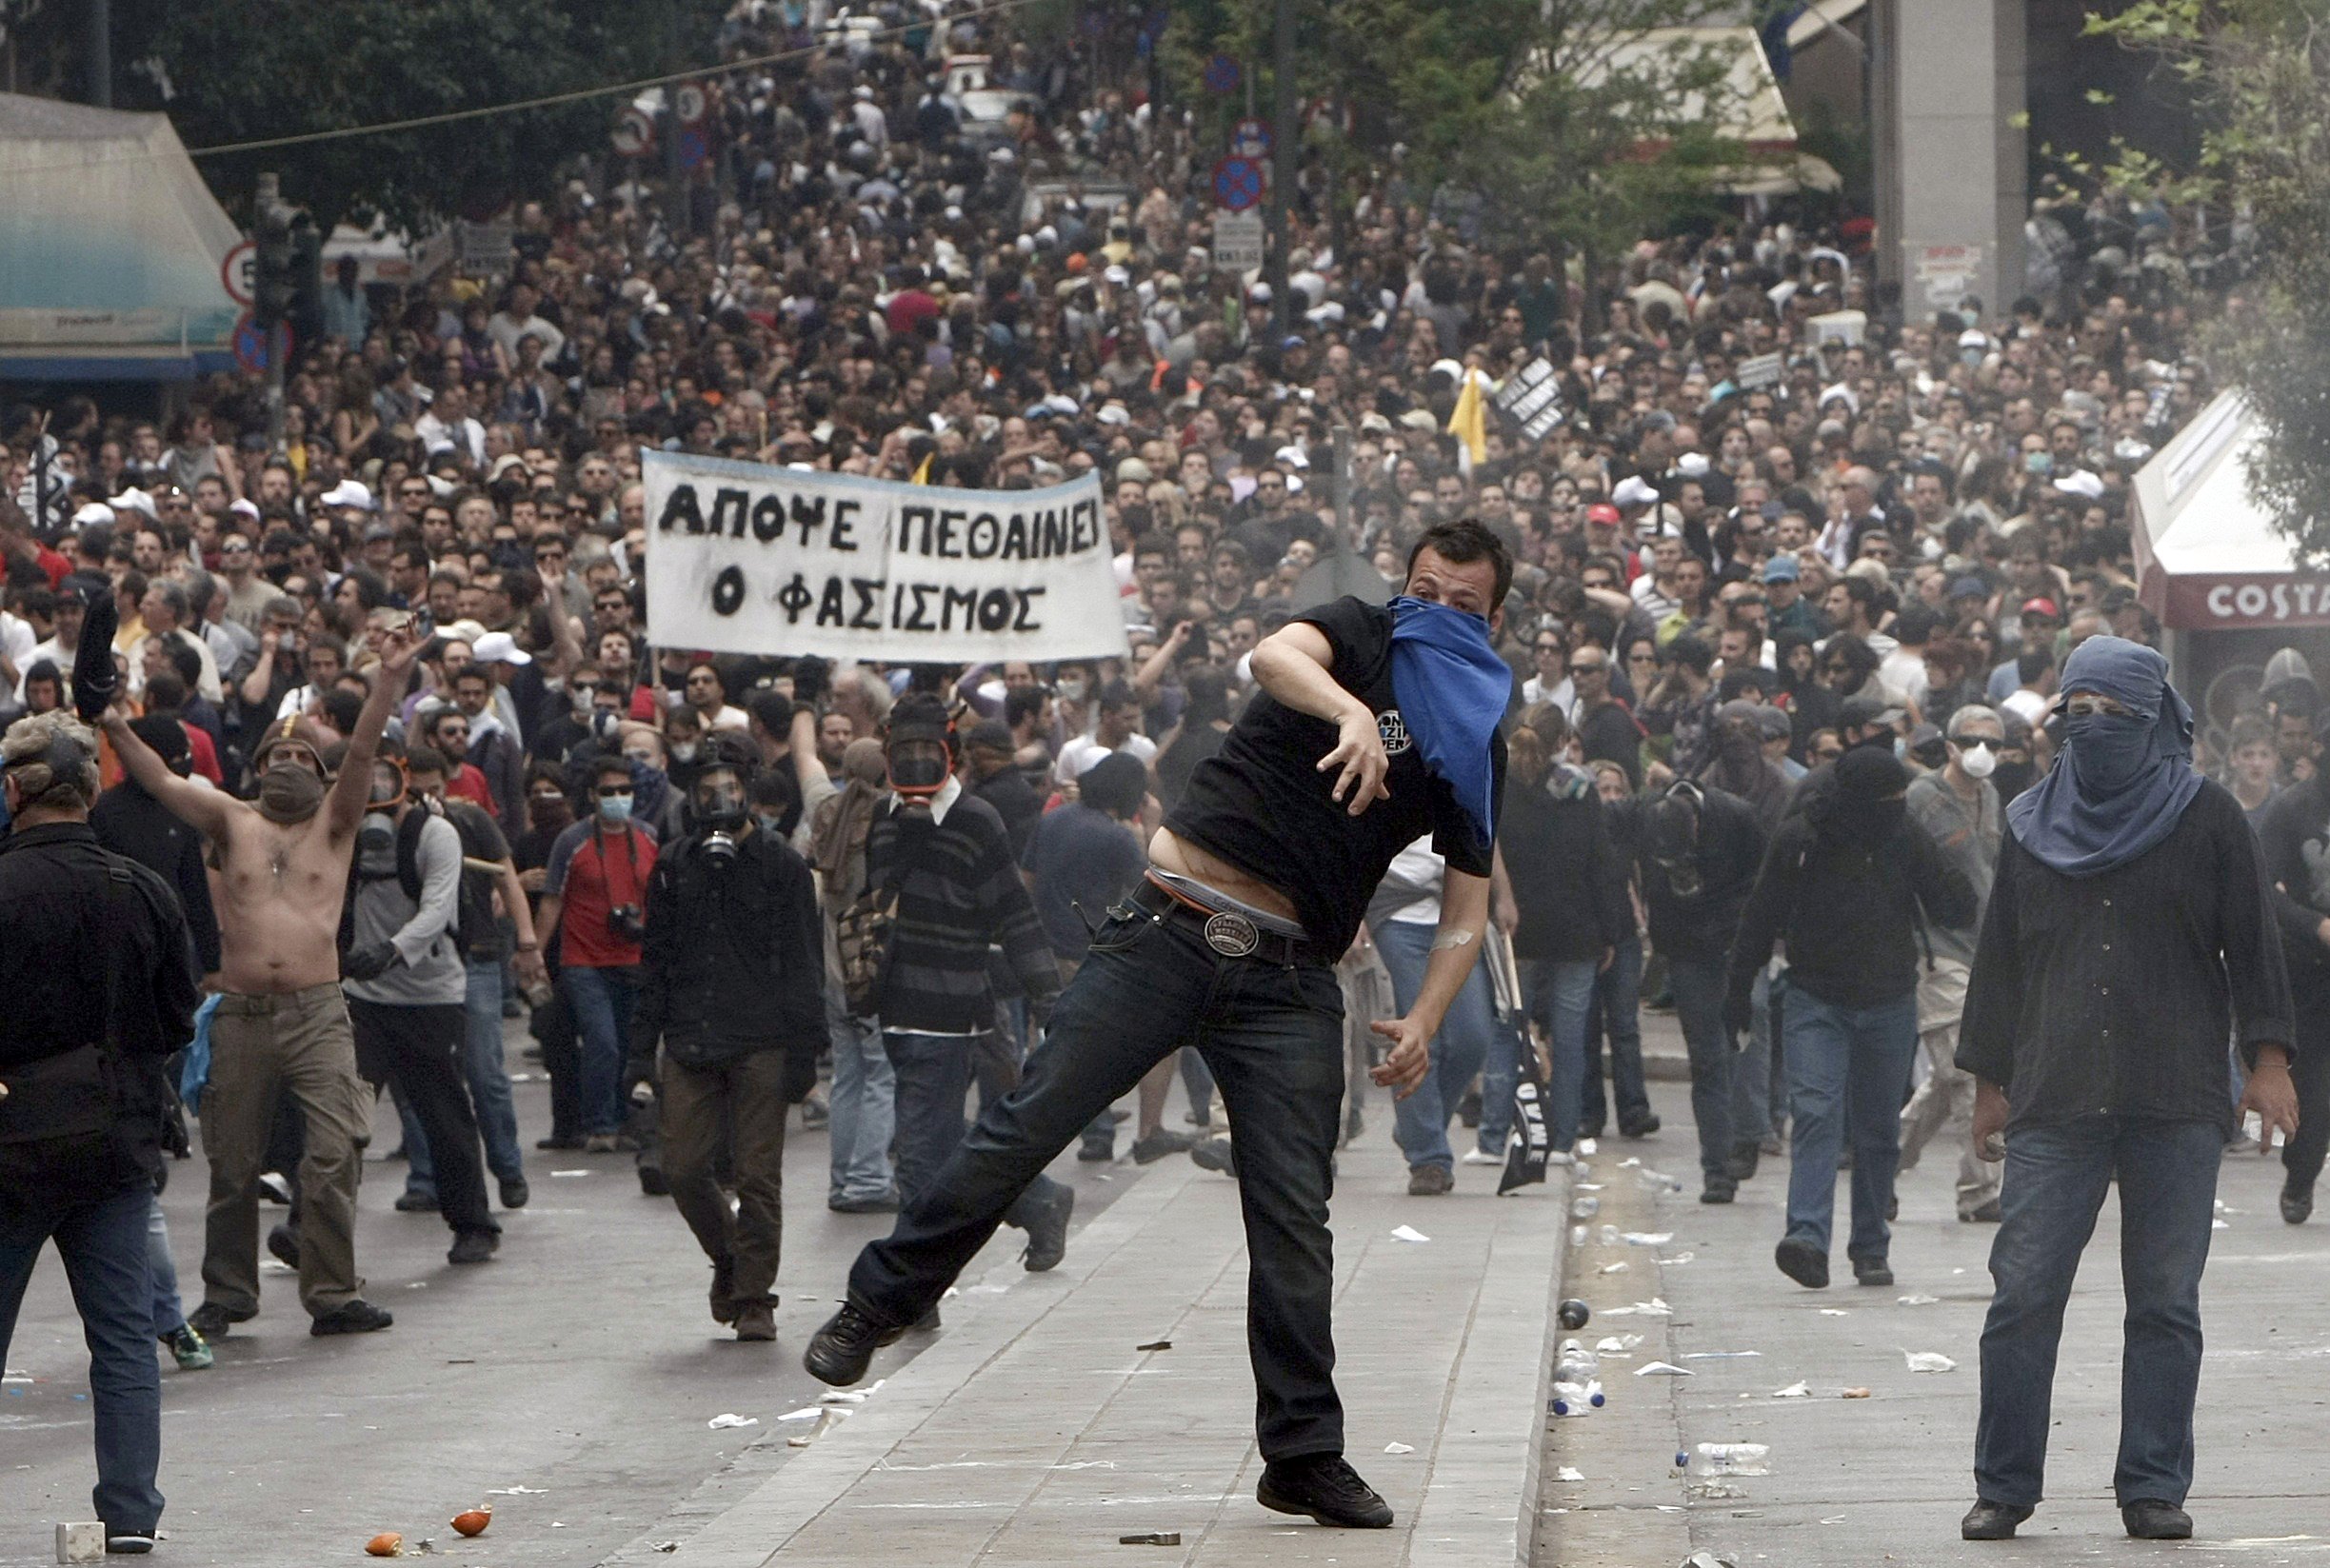 Yunanistan'da ekonomik krizin ardından gelen kemer sıkma politikaları üzerine 2010 yılında ilan edilen genel grev sırasında çıkan ve can kayıpları da yaşanan olaylarda protestocularla polis karşı karşıya geldi